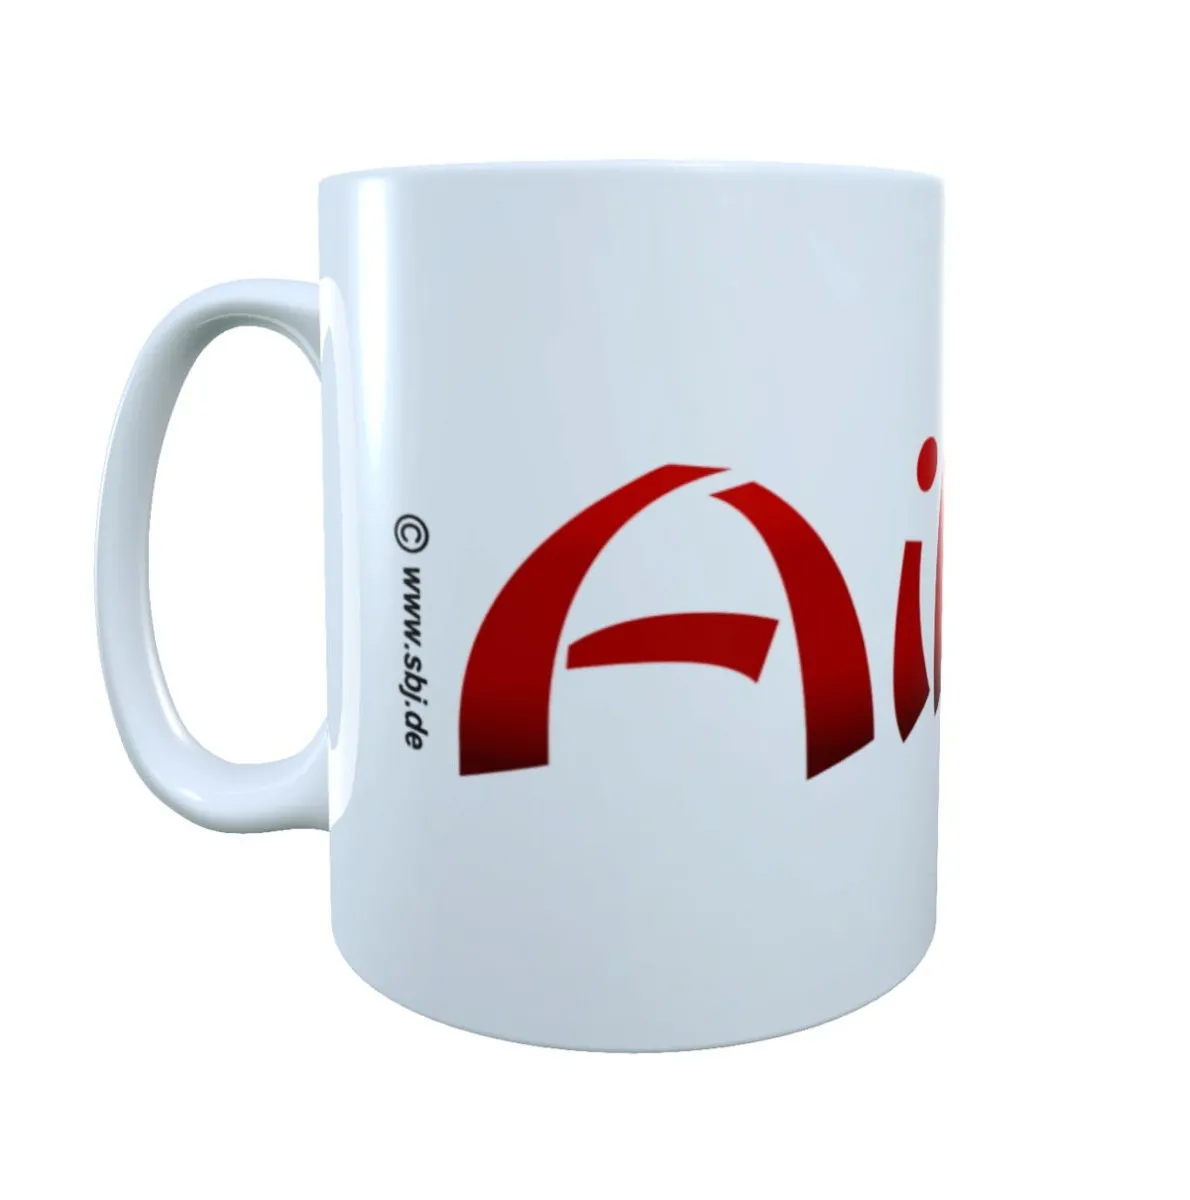 Mug - Coffee cup - Cup white Aikido